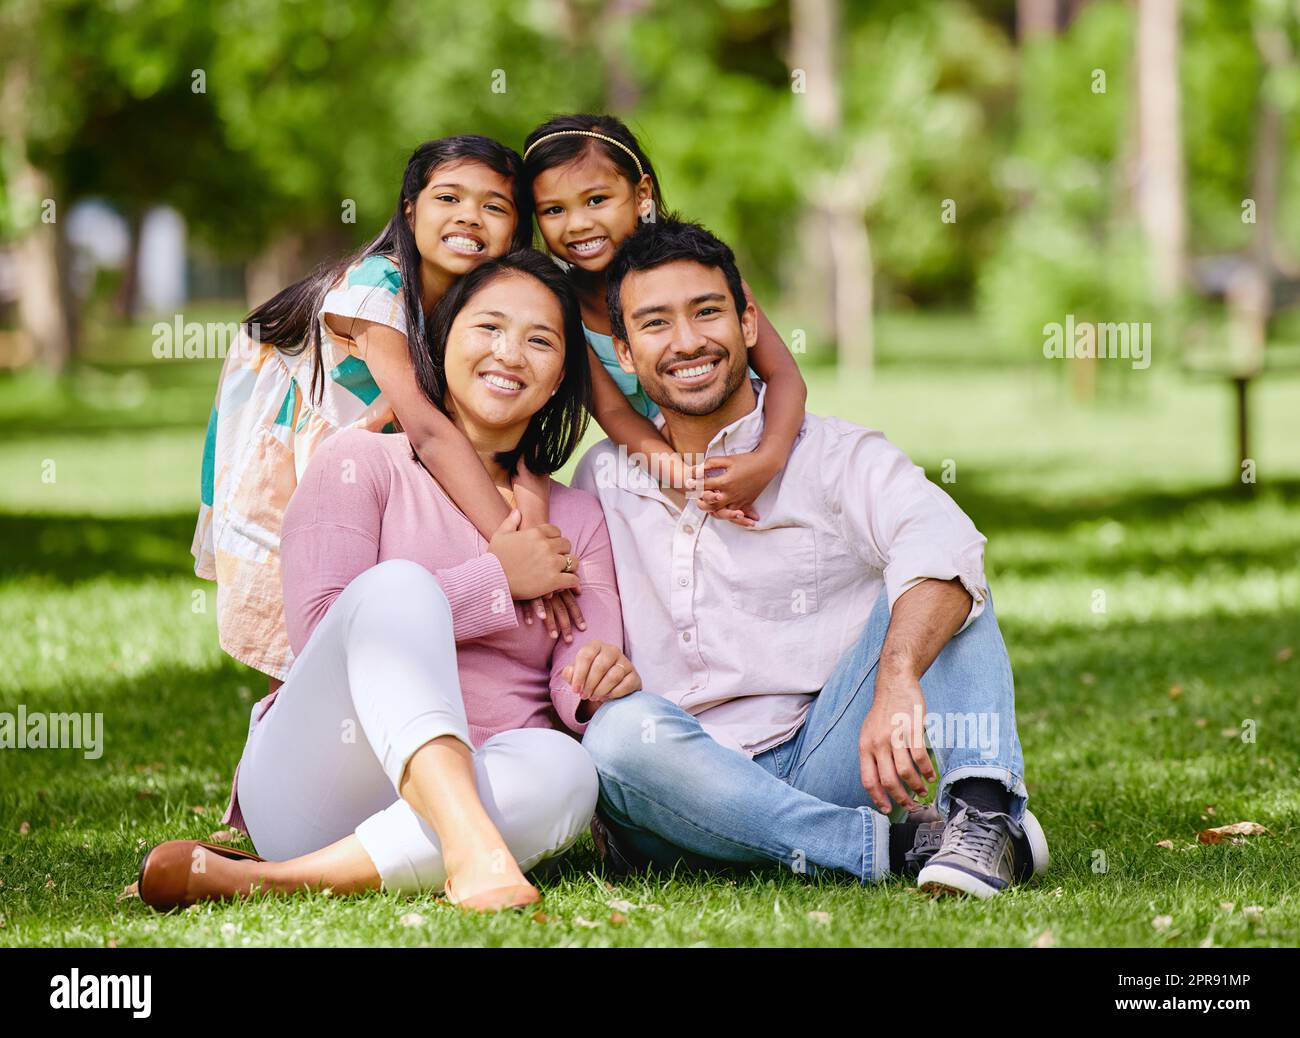 Ritratto della felice famiglia asiatica nel parco. Adorabili bambine che legano e abbracciano i loro genitori fuori in un parco. Marito e moglie a figura intera seduti e che si godono il tempo libero con le figlie Foto Stock